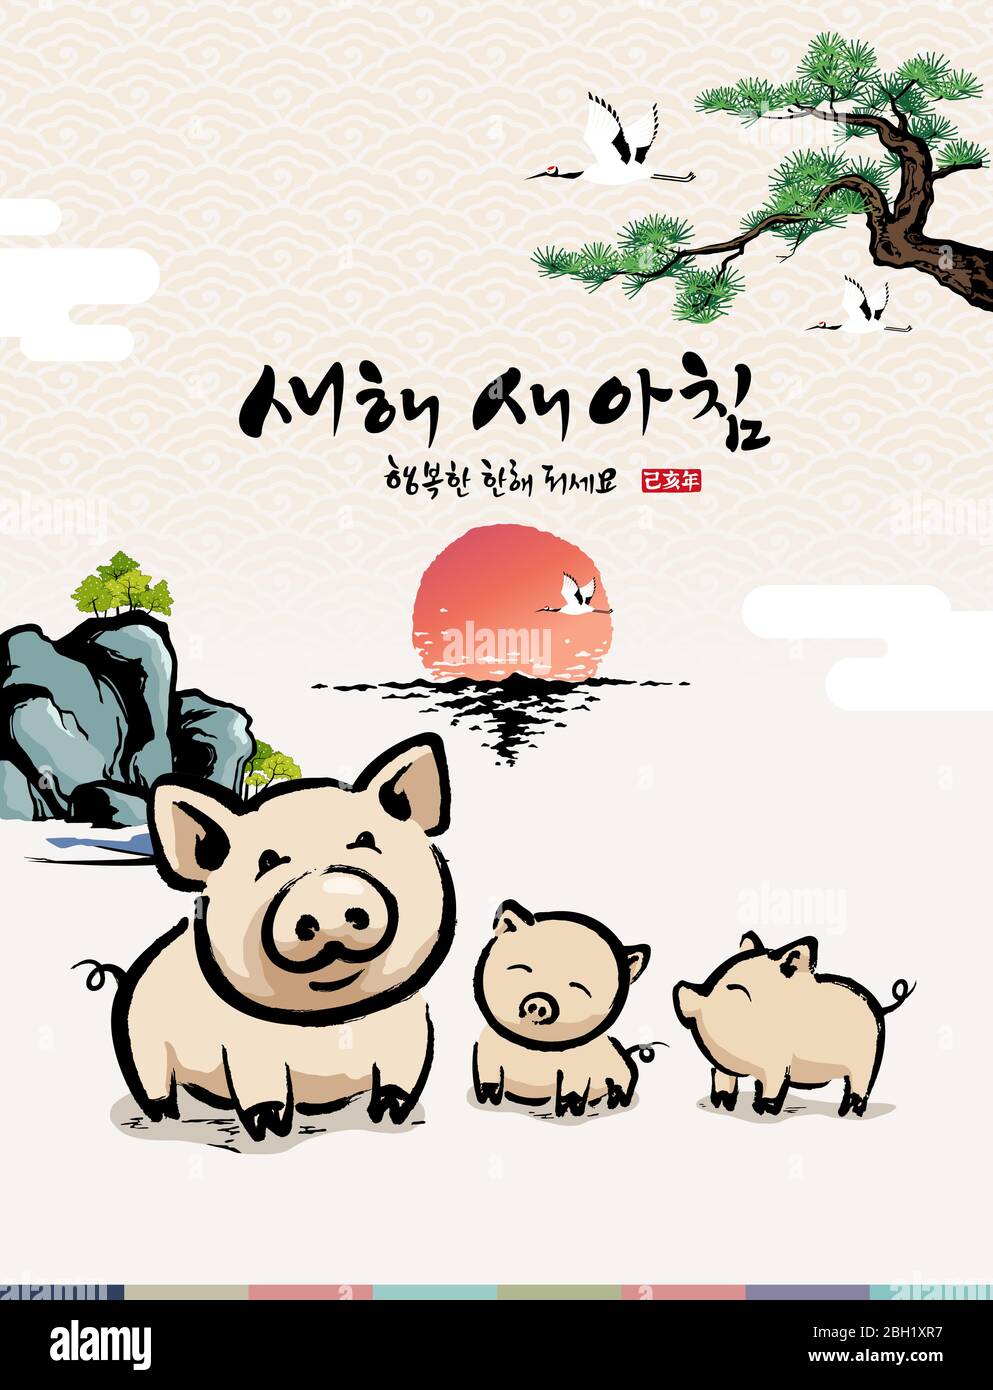 Felice anno nuovo, traduzione di Hangul: Felice anno nuovo Calligraphy e famiglia di maiale e paesaggio di alba del mare Illustrazione Vettoriale